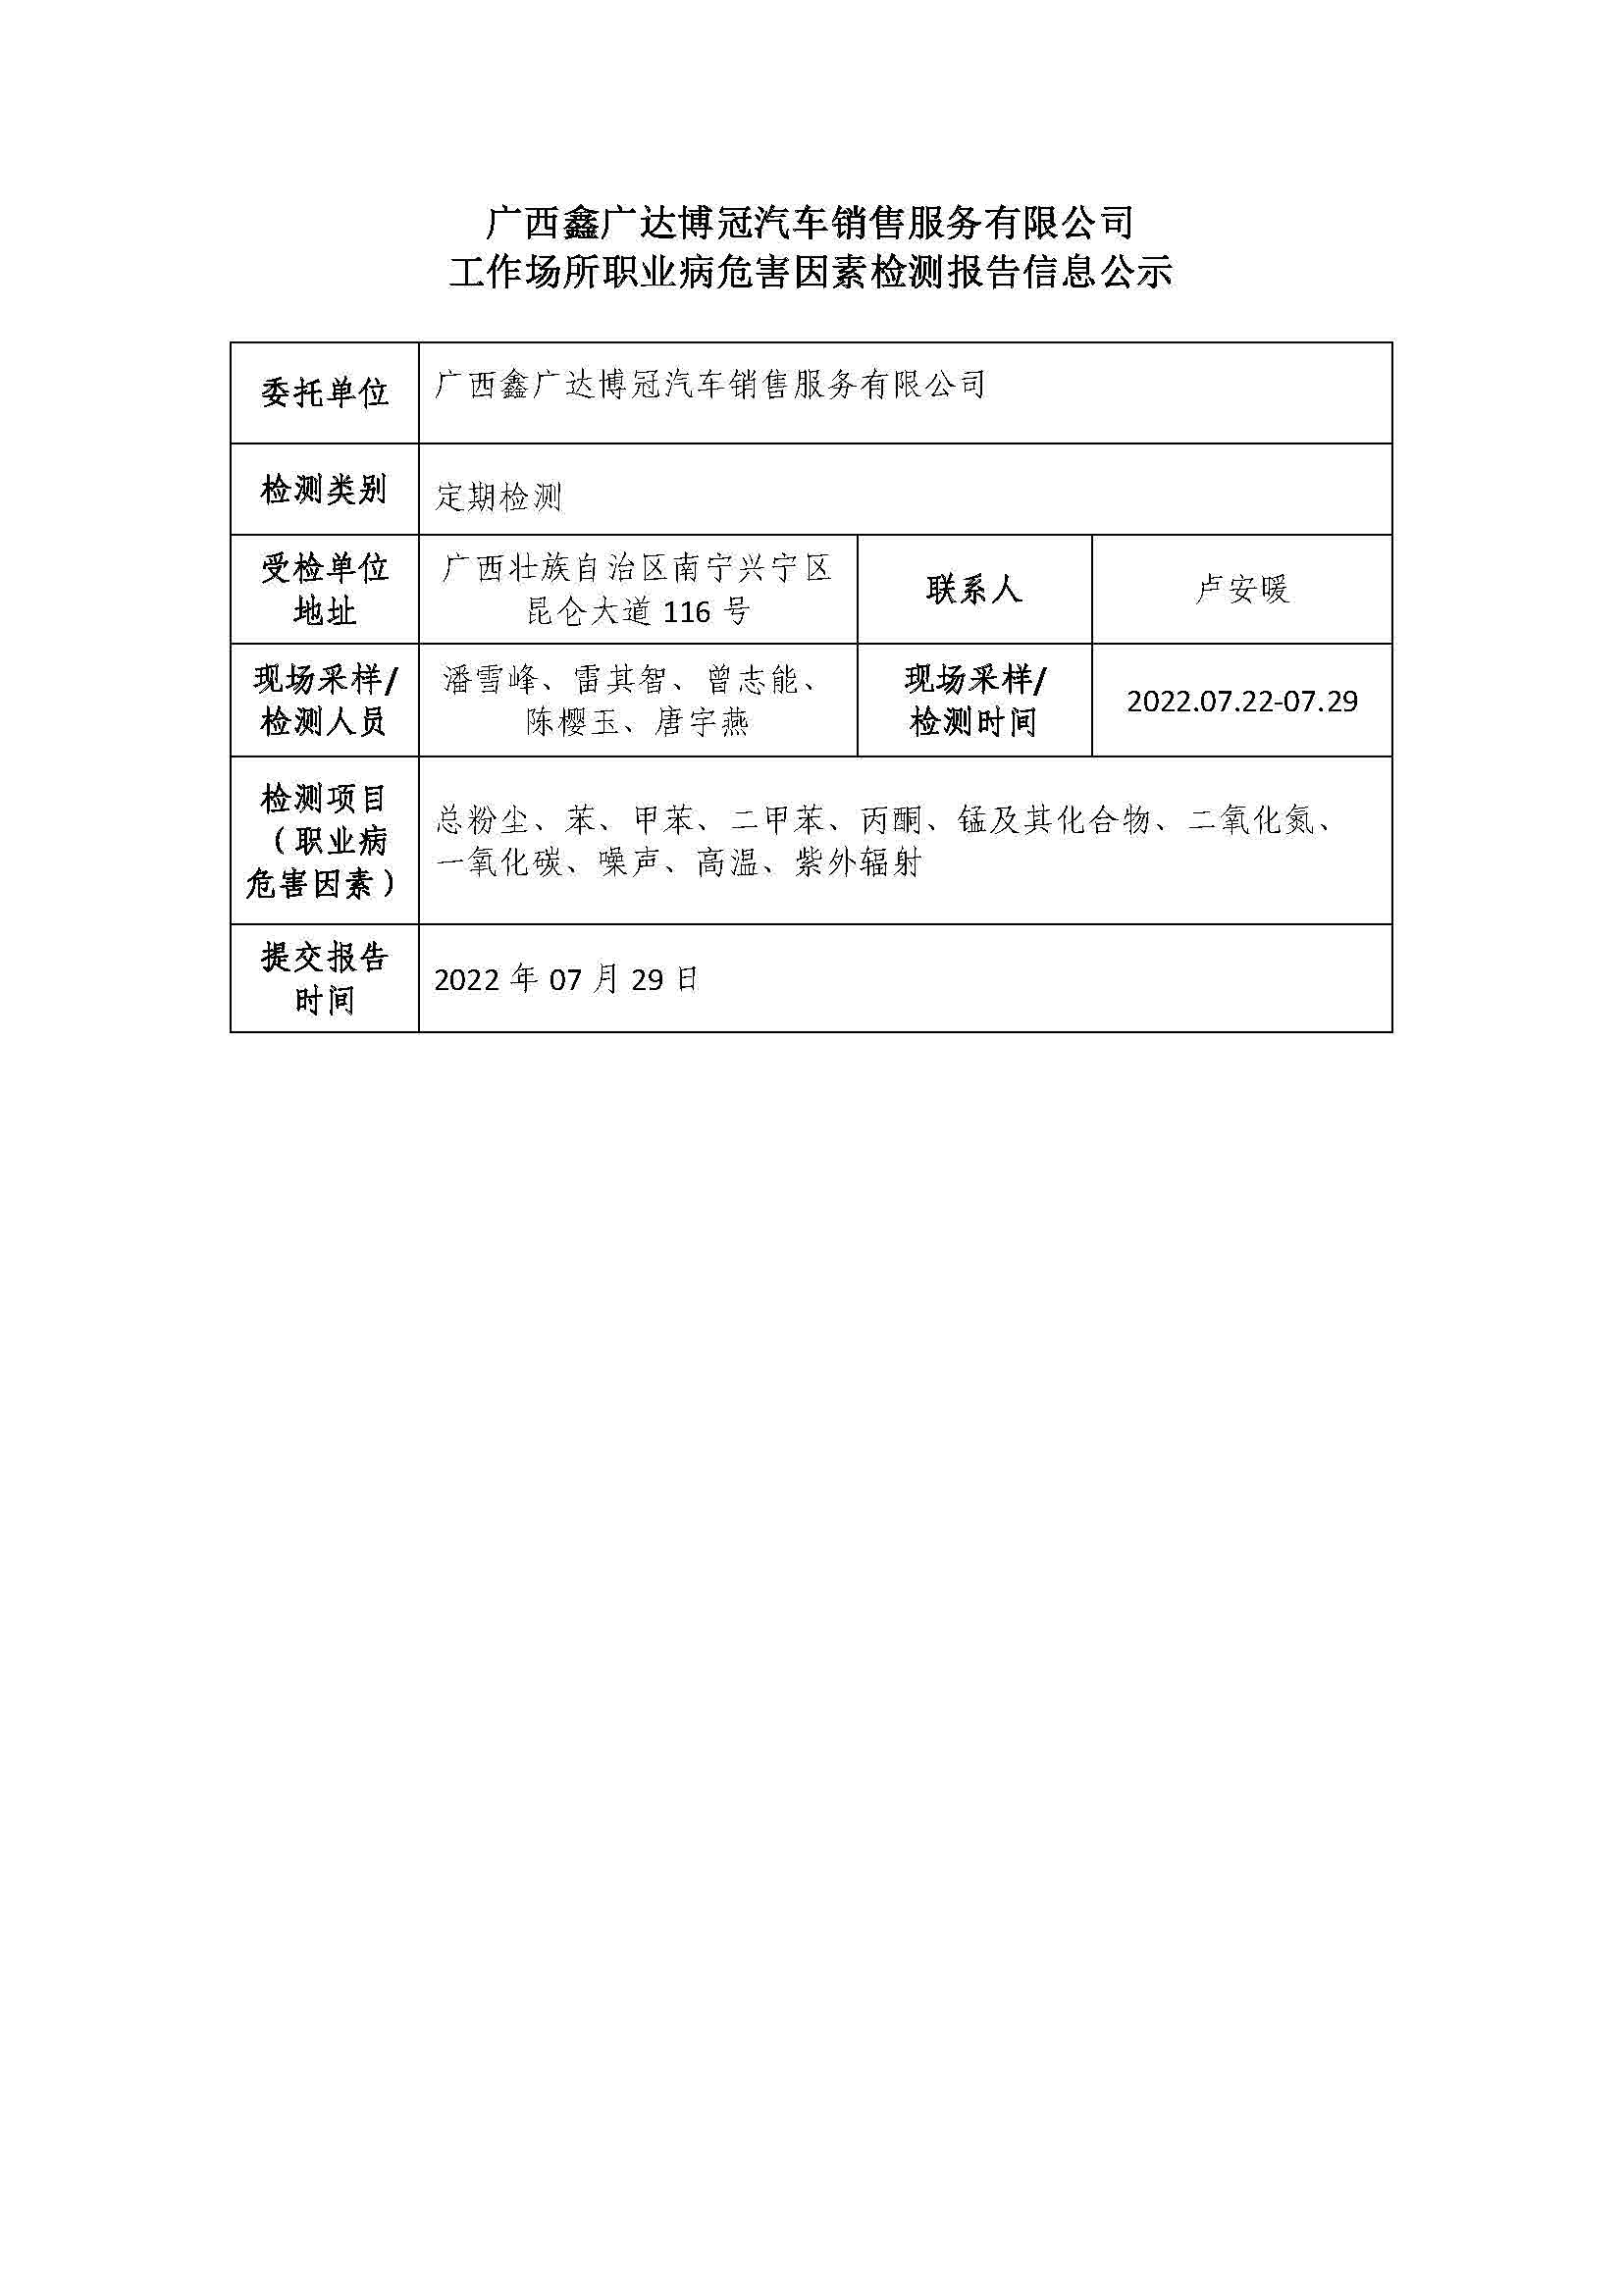 广西鑫广达博冠汽车销售服务有限公司工作场所职业病危害因素检测报告信息公示